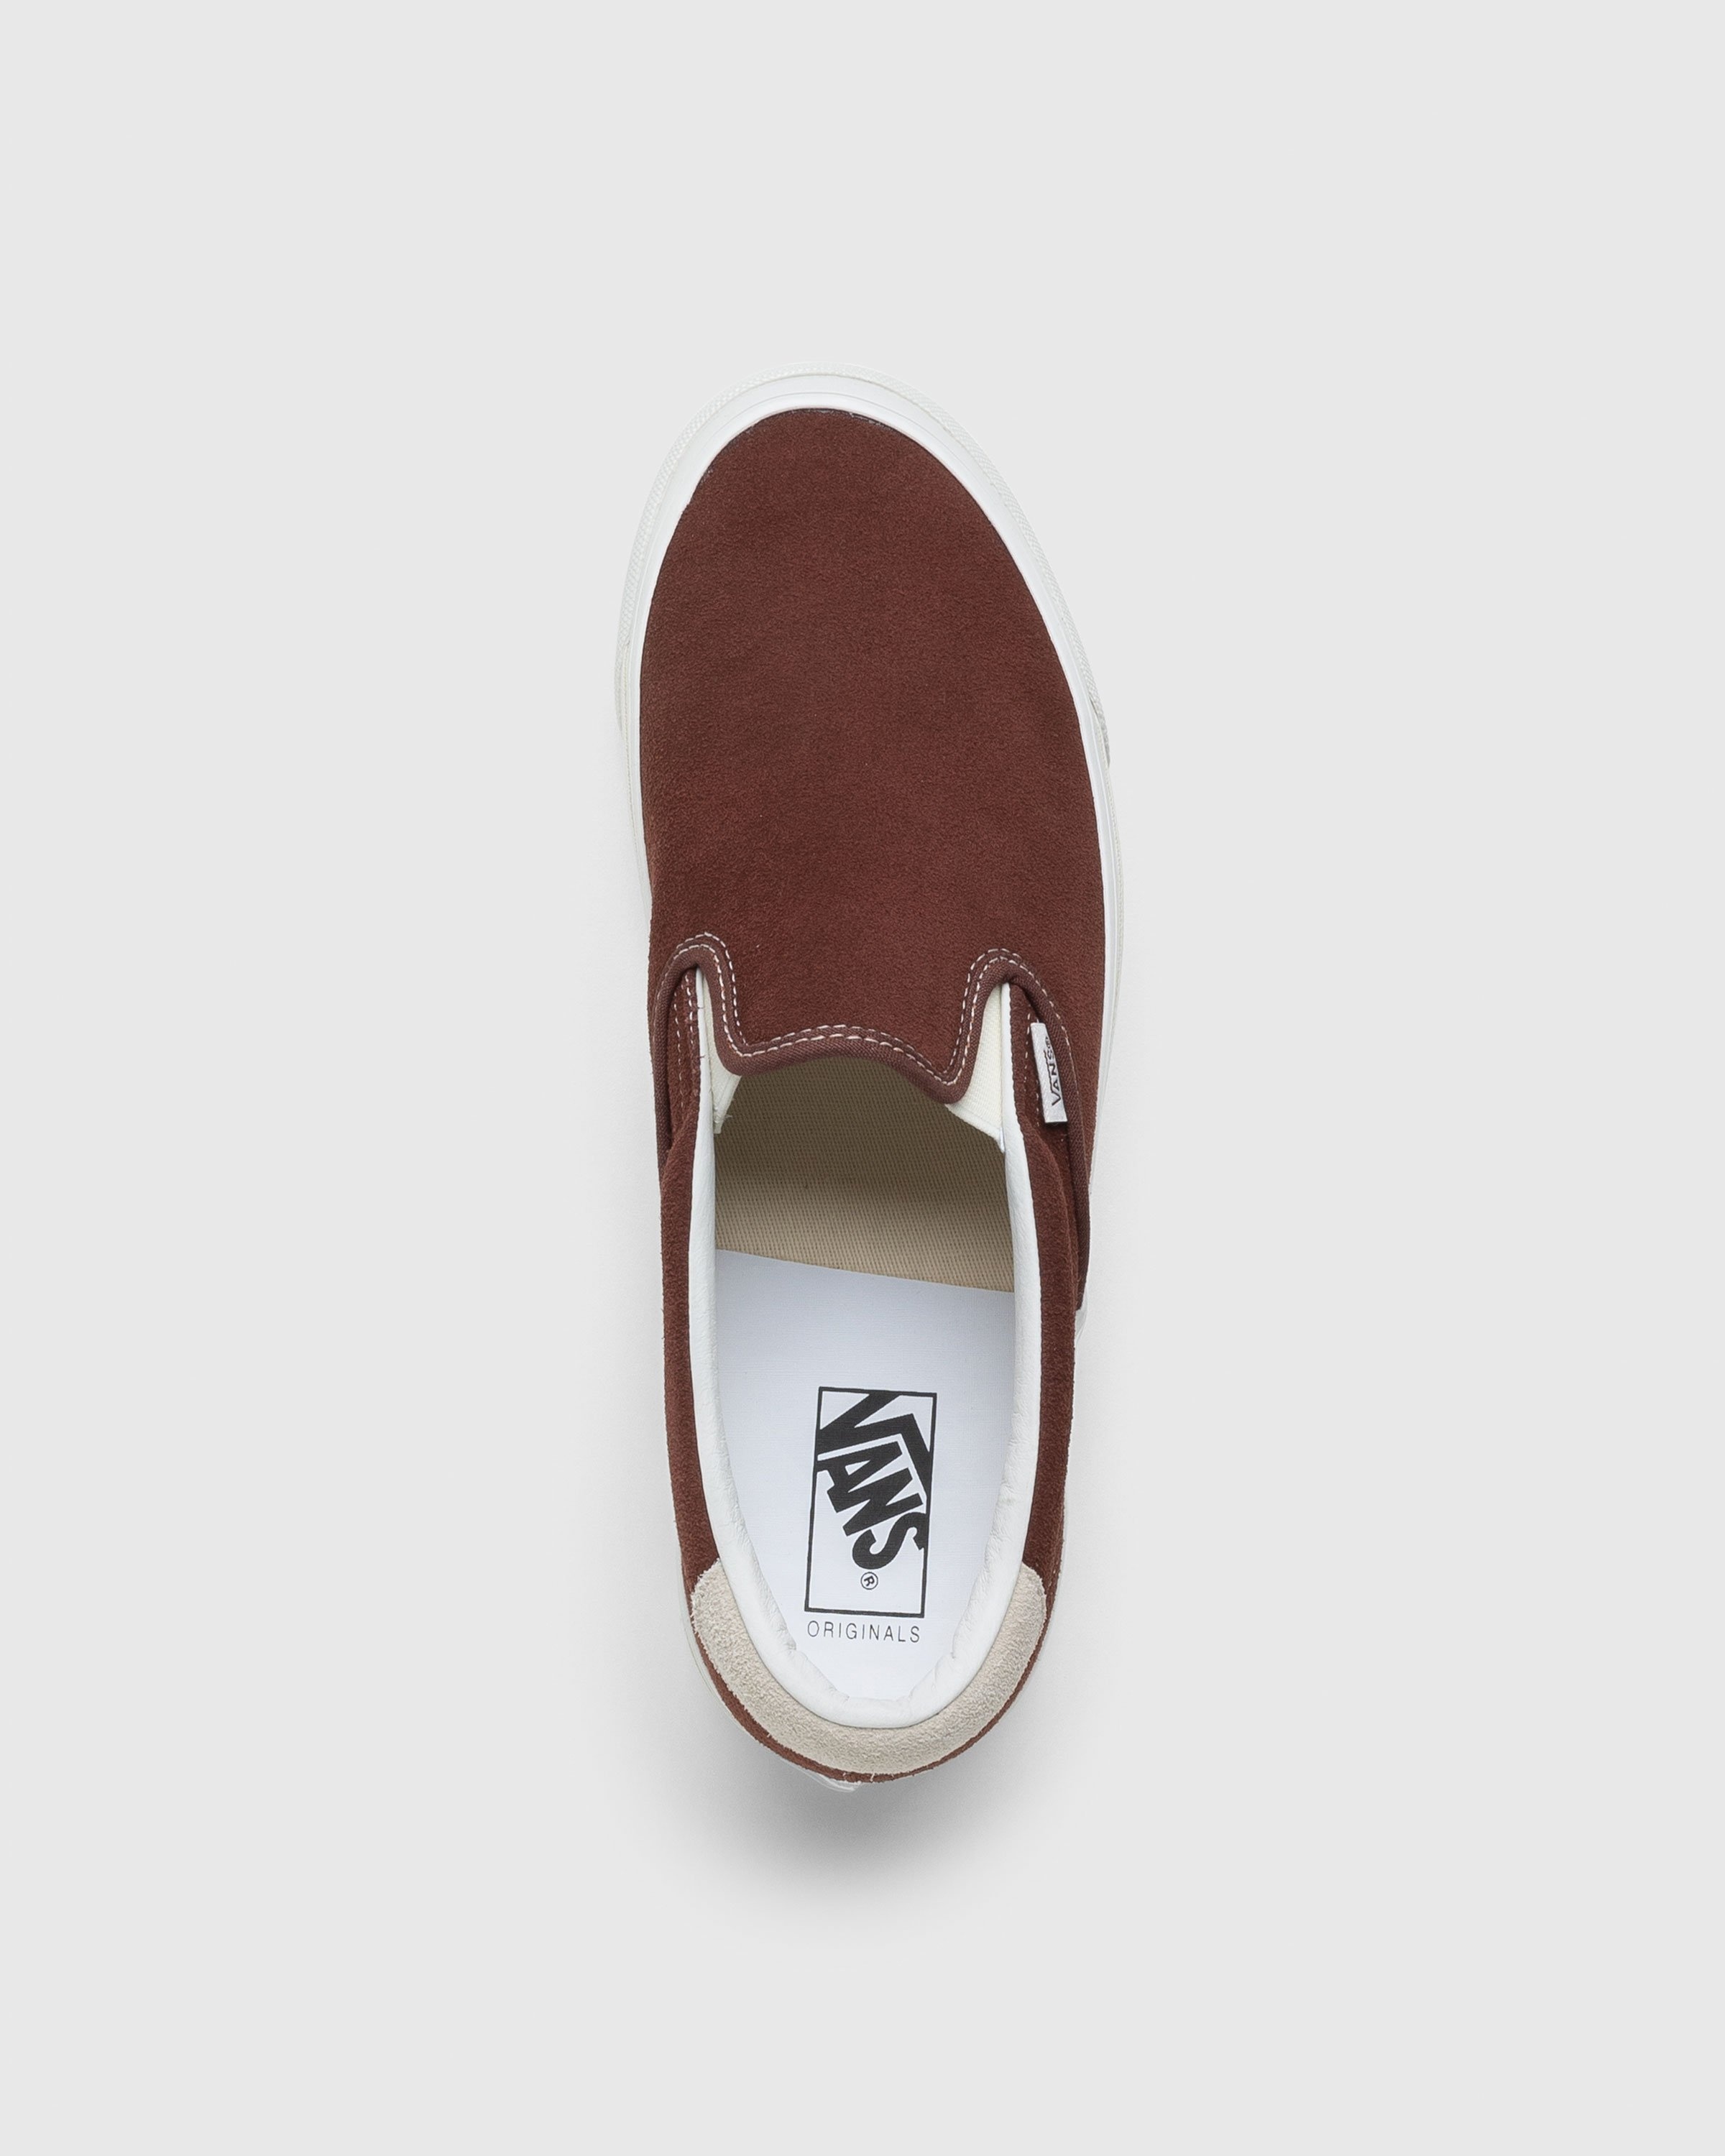 Vans – OG Slip-On 59 LX Suede Brown - Sneakers - Brown - Image 5